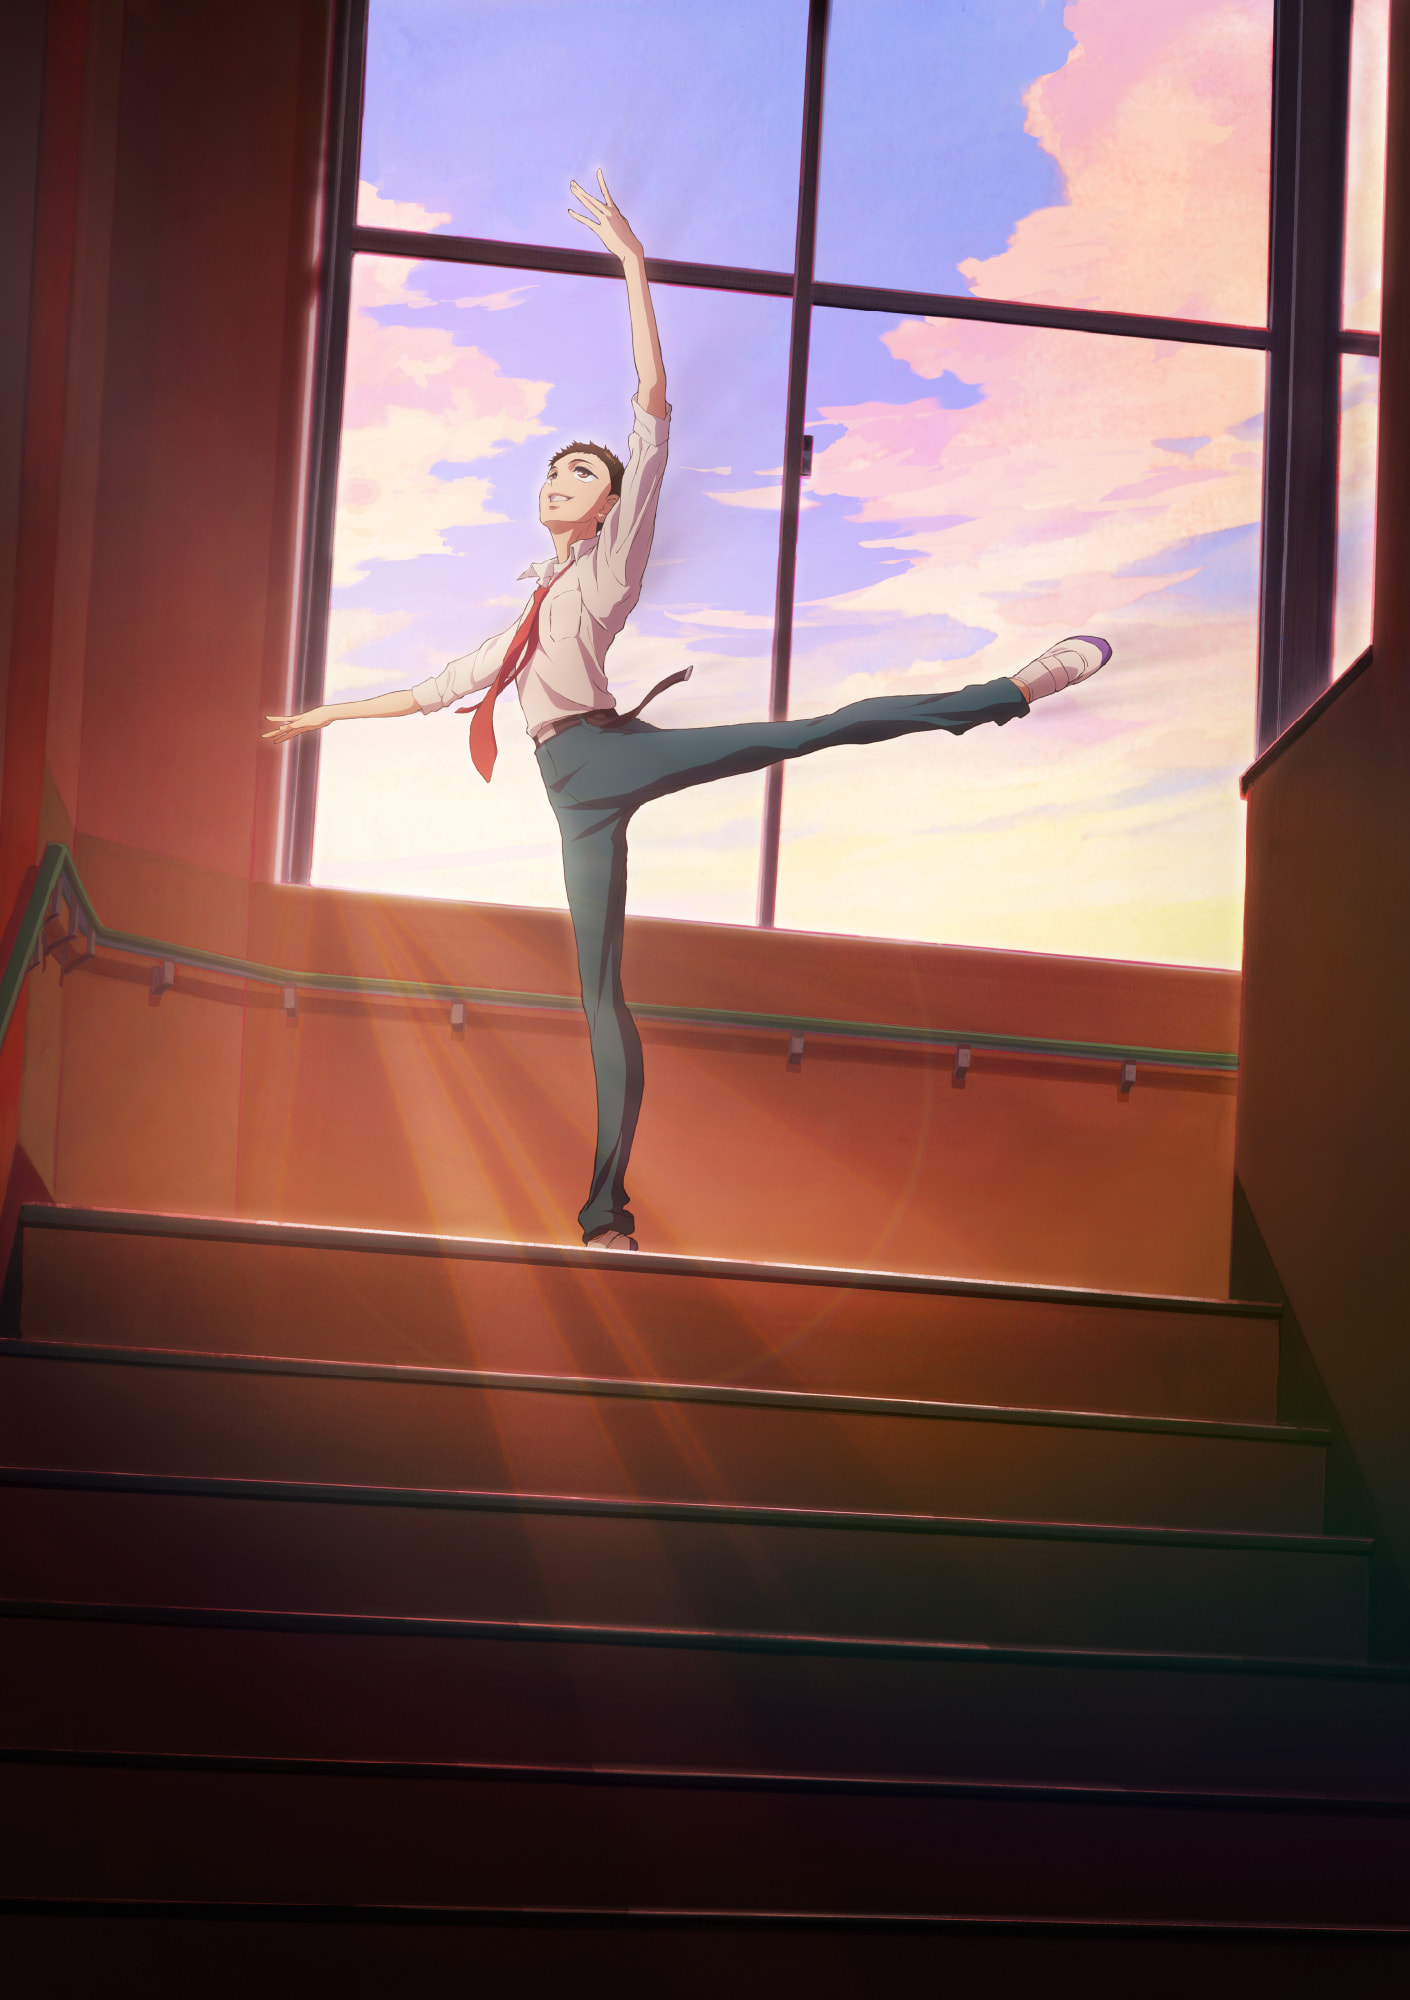 dance-dance-danseur-kv Ballet Anime "Dance Dance Danseur" Unveils New Visual and Promo Video!